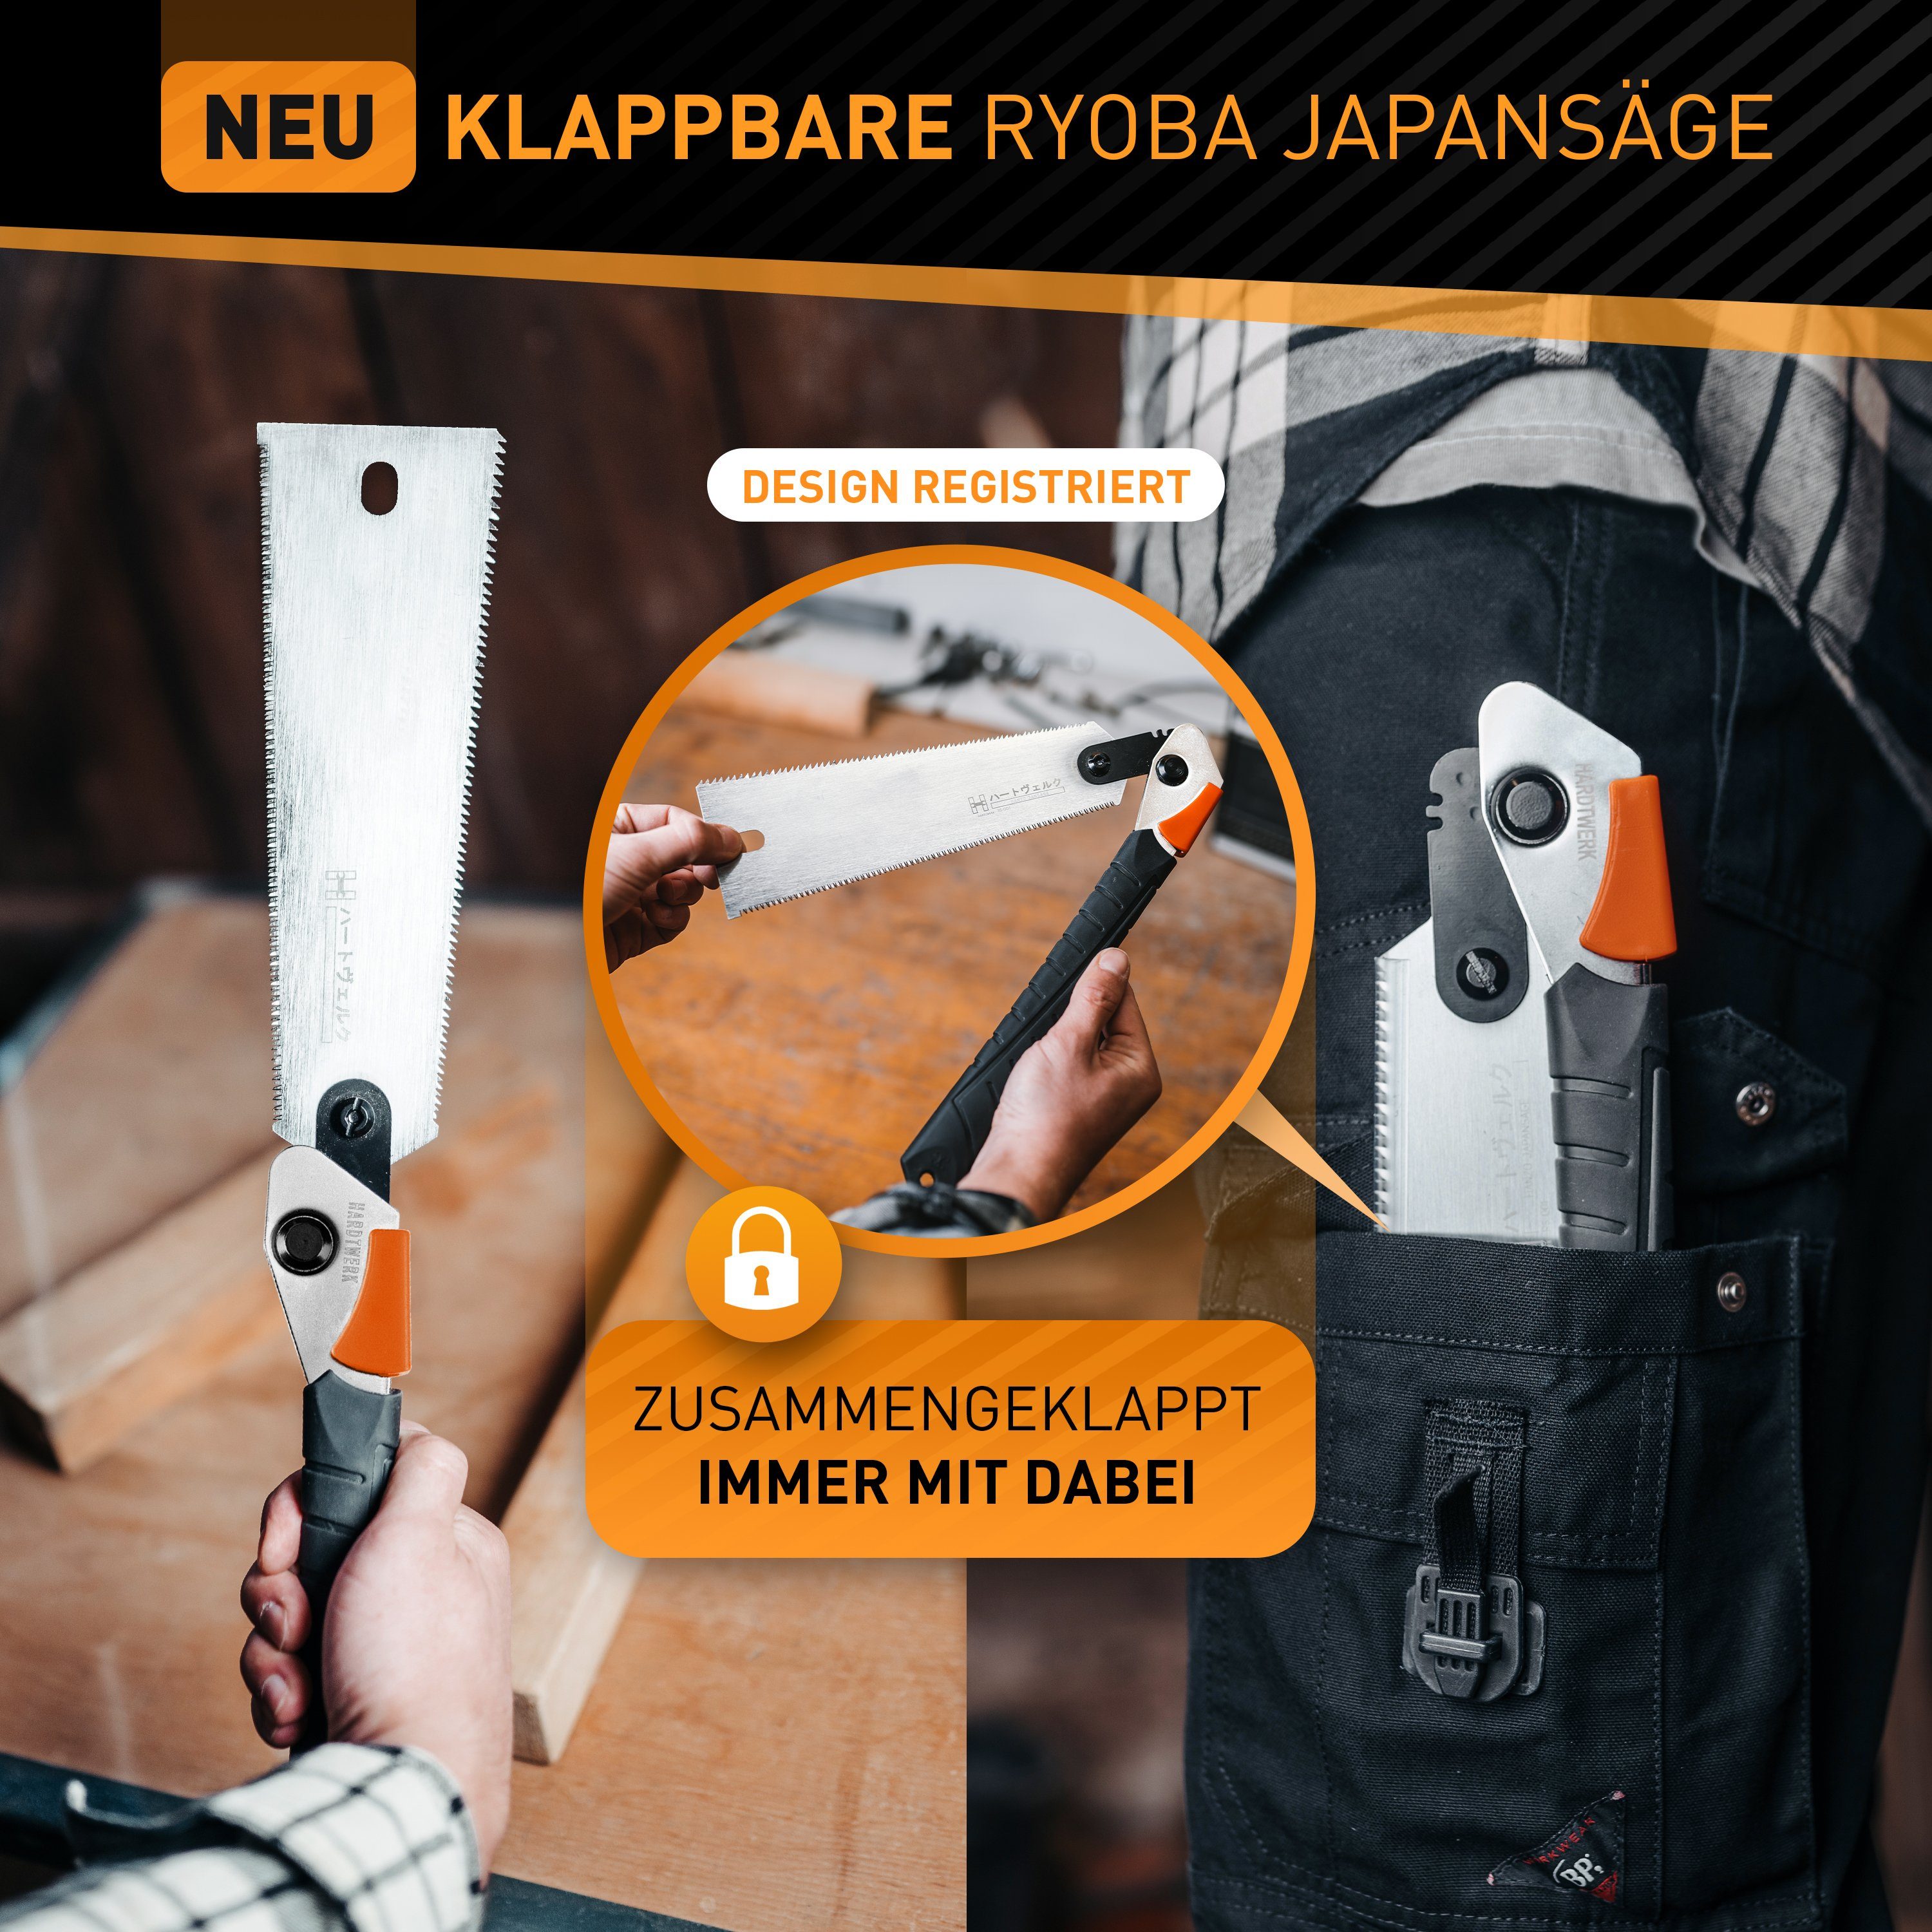 Hardtwerk® Japansäge Hanzo klappbar & aus (SUPER-GRIP für - Säge Heimwerker japanische Karbonstahl, 240mm - SK4 Griff) doppelseitig Feinsäge